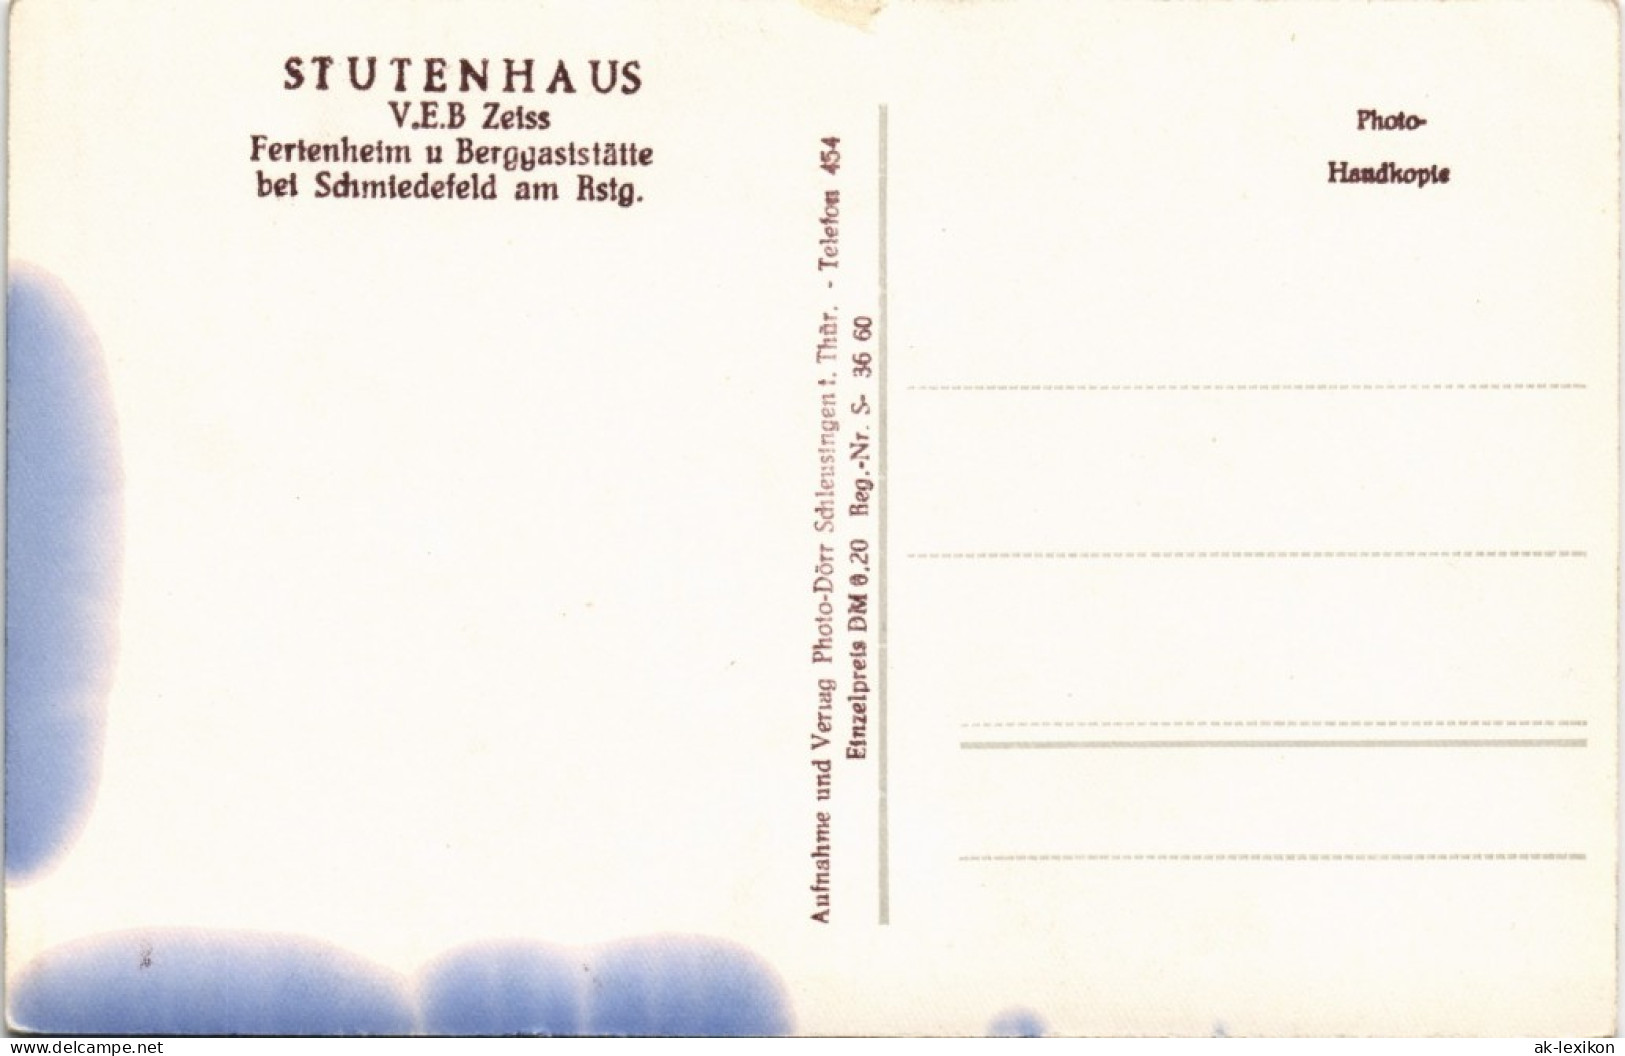 Schmiedefeld (Rennsteig) Ferienheim U Berggaststätte V.E.B Zeiss STUTENHAUS 1960 - Schmiedefeld